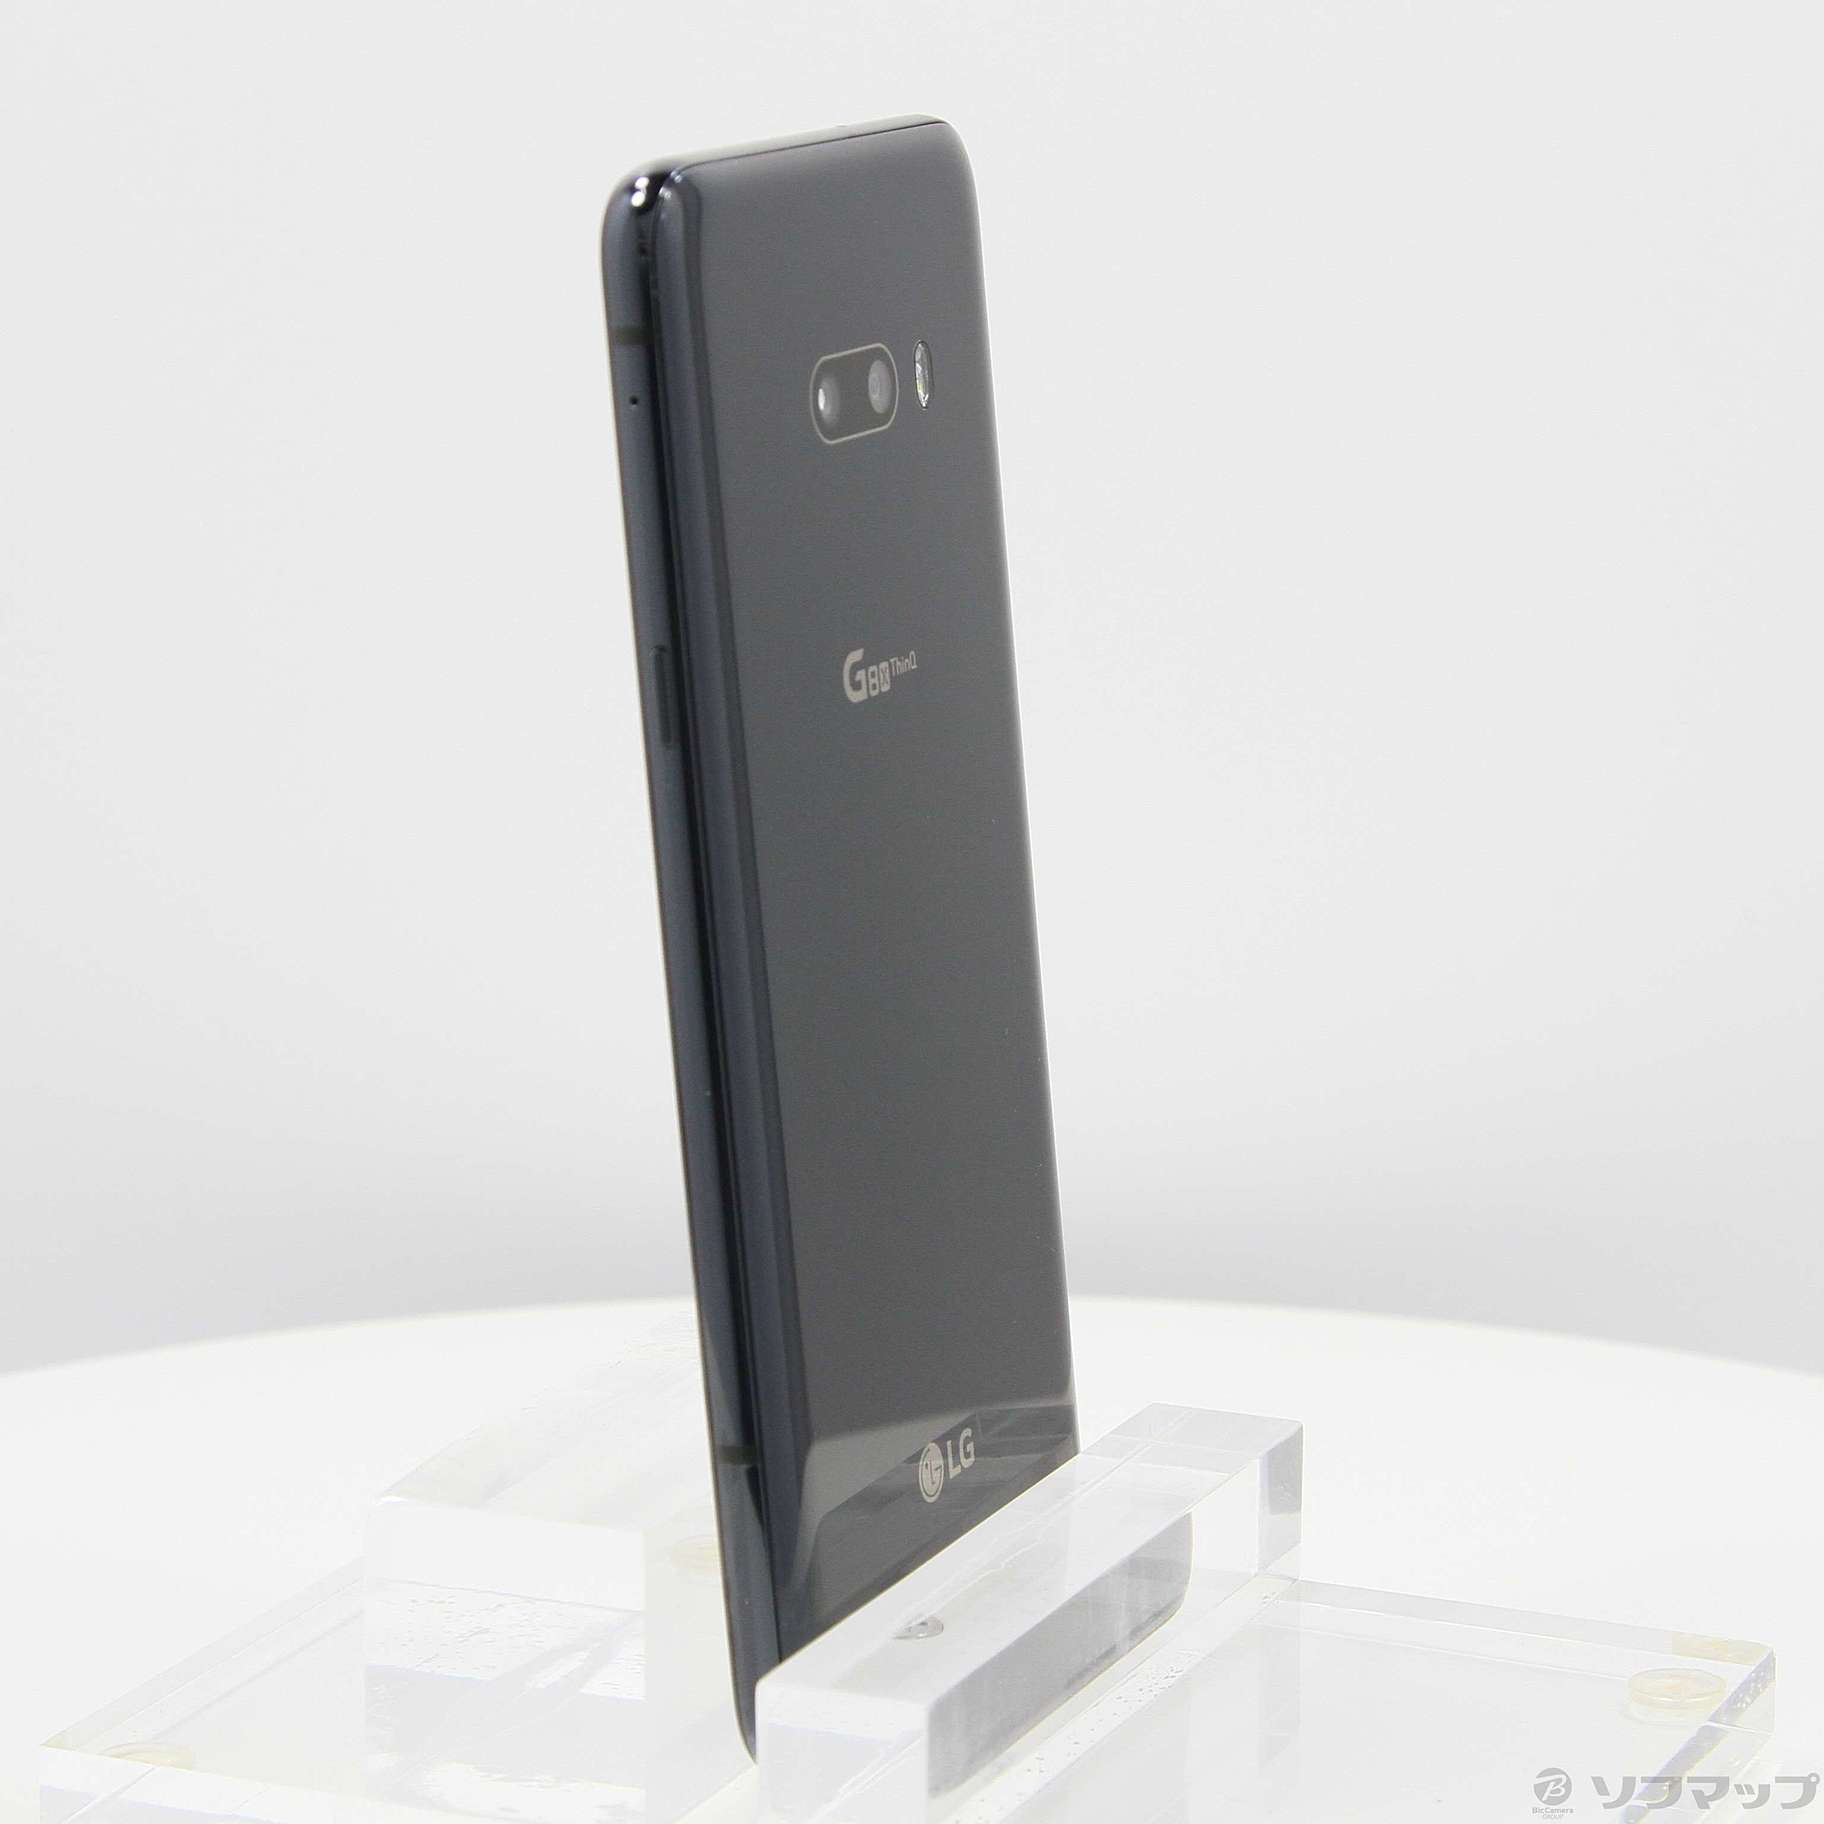 大幅割引2画面スマホ LG G8x ThinQ (Softbank) Android